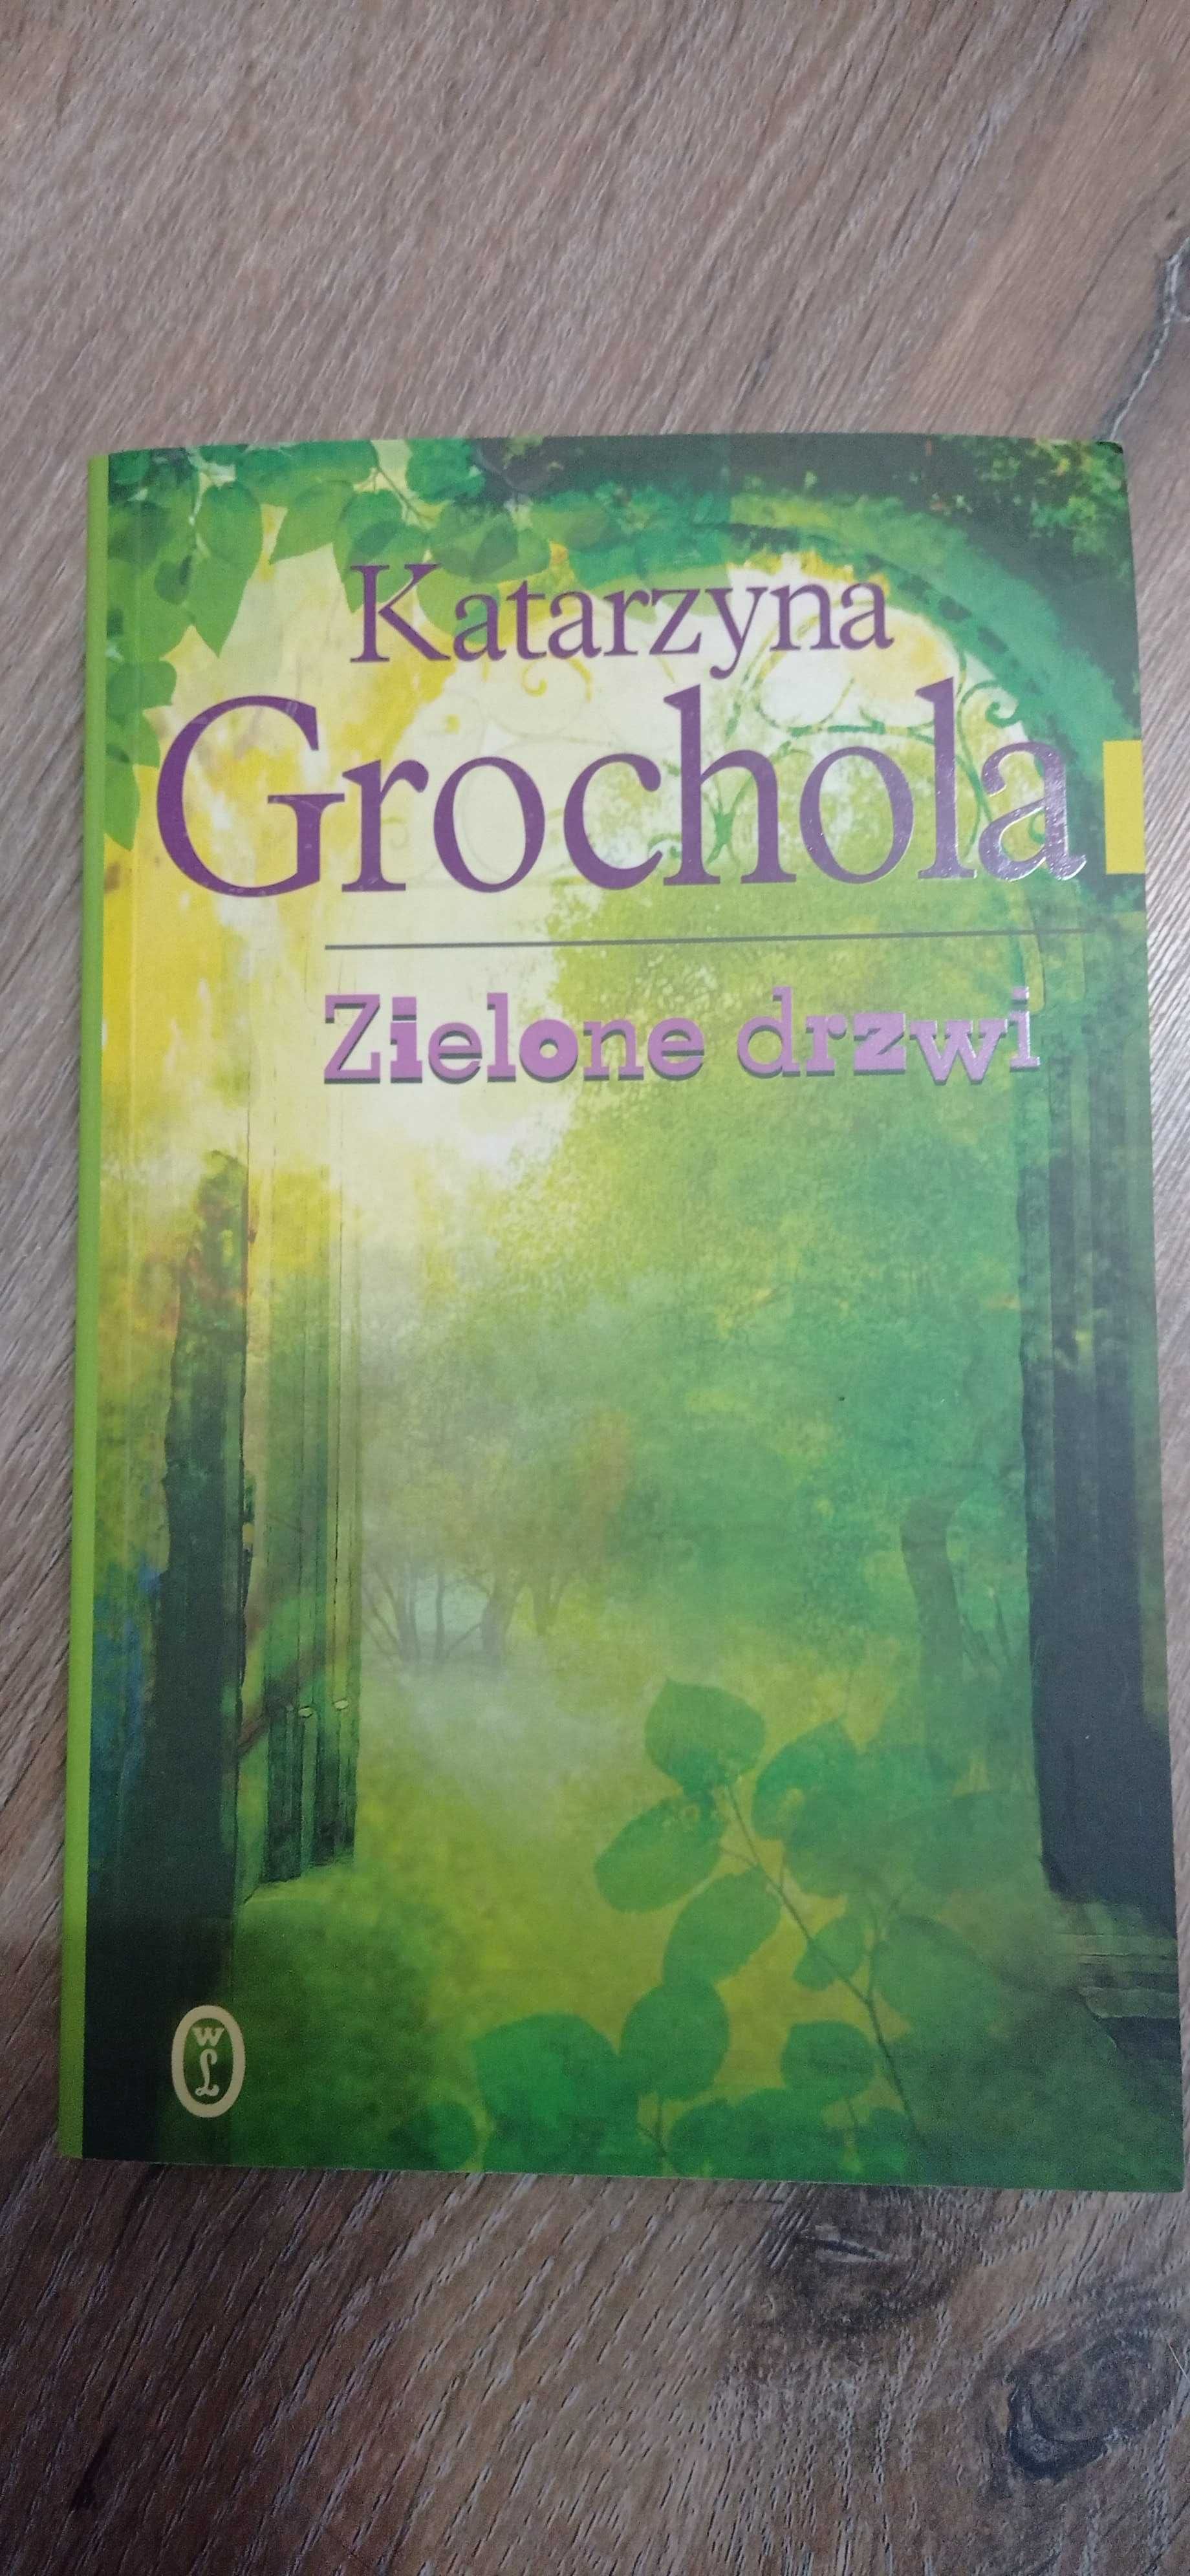 Książka nowa Katarzyny Grocholi - Zielone drzwi